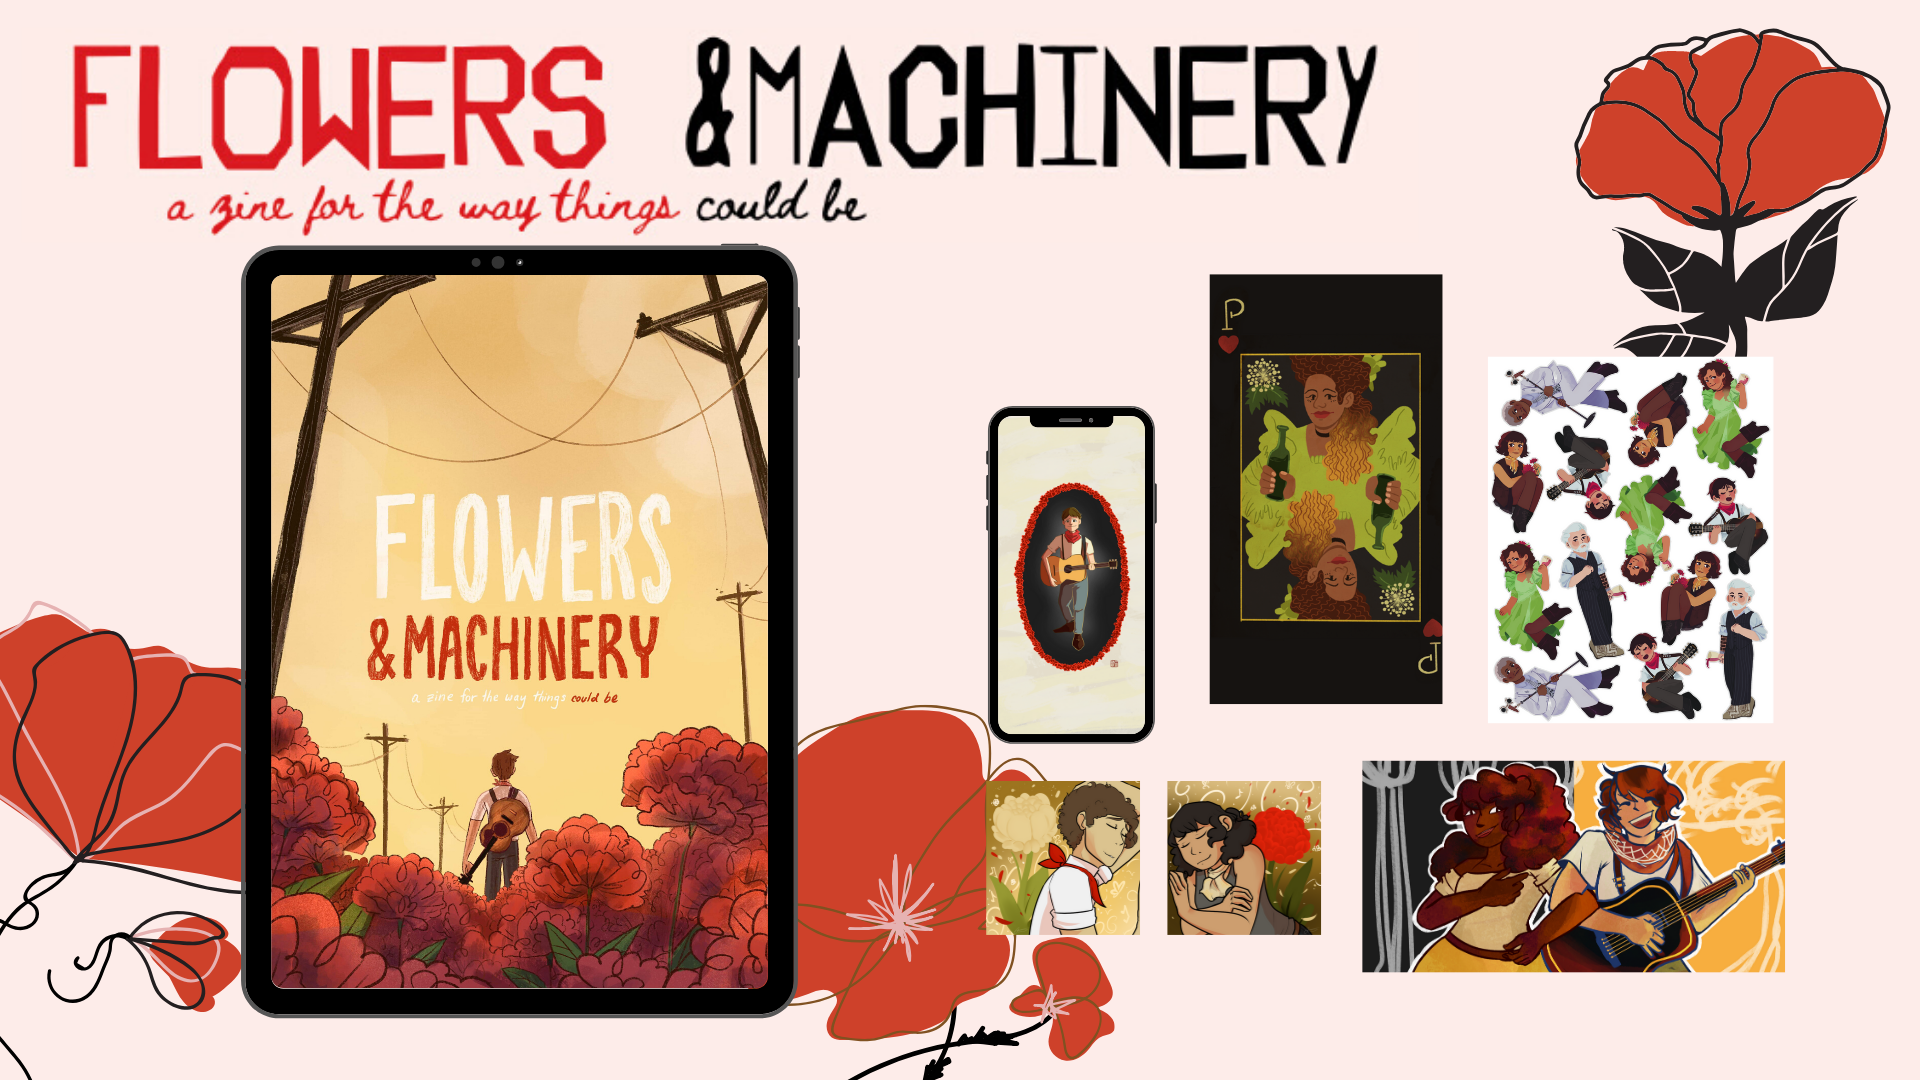 Flowers & Machinery